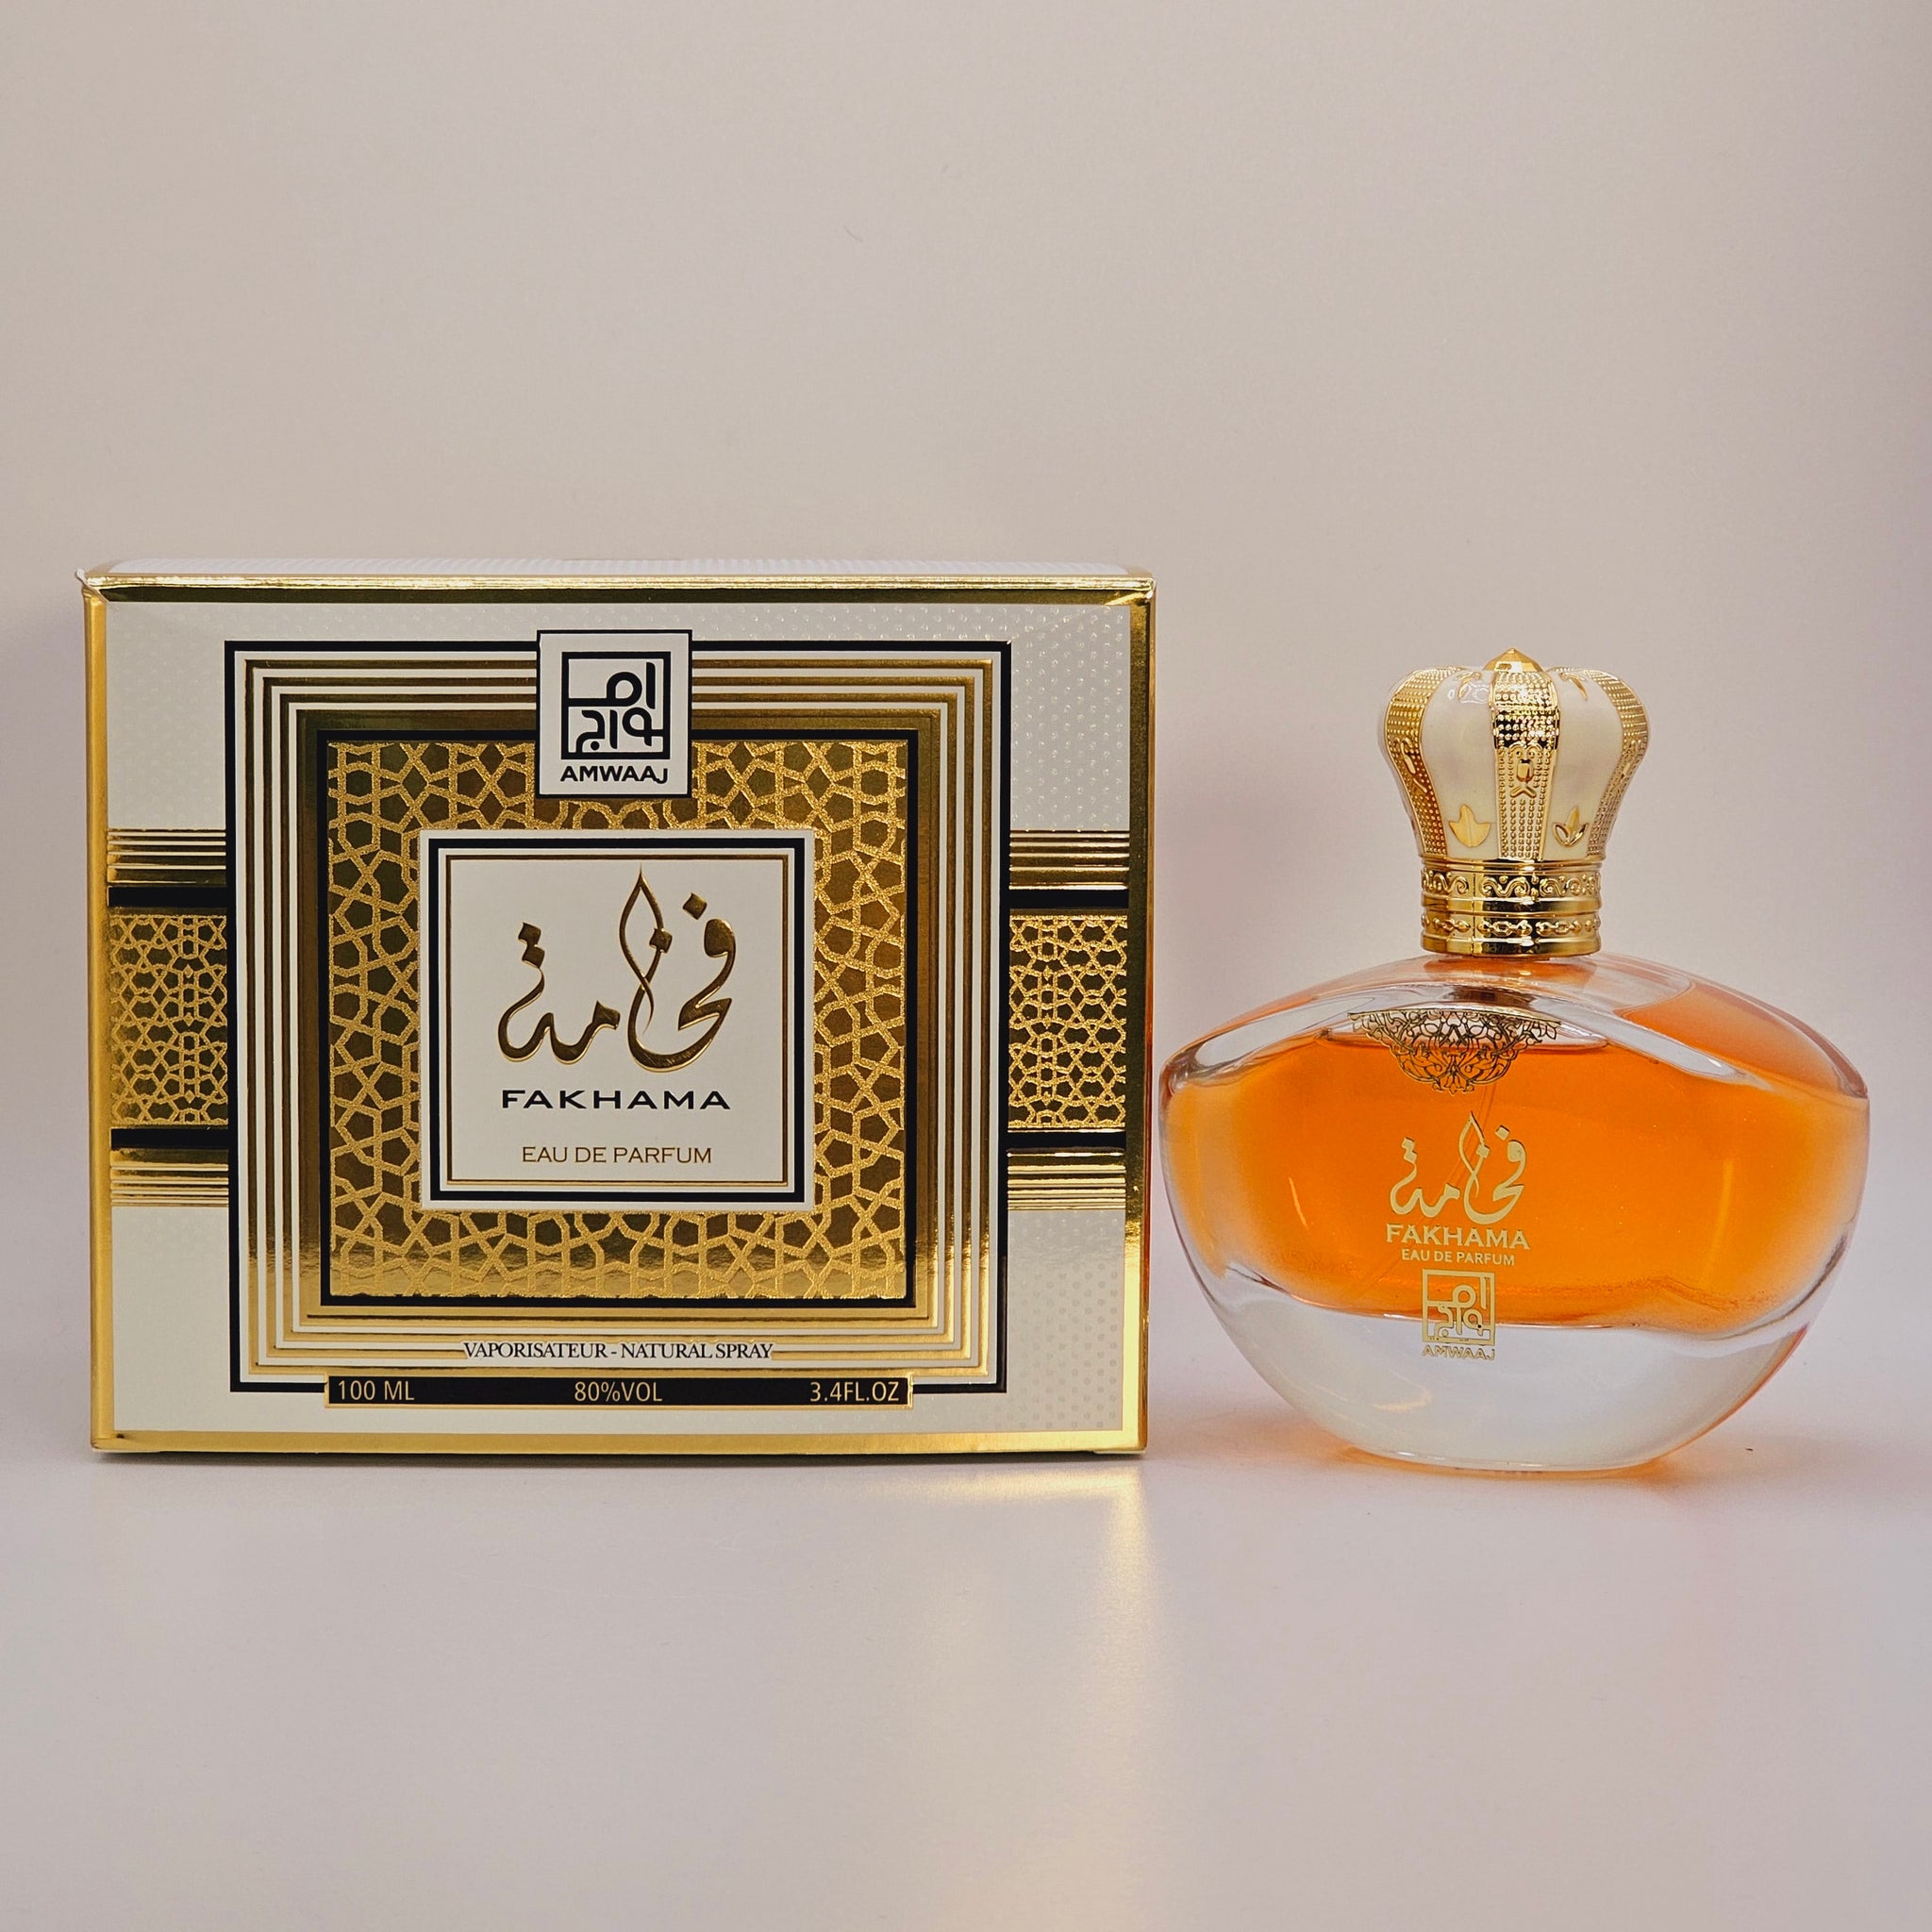 Fakhama Eau De Parfum 3.4 Oz By Amwaaj - Floral Fruity Fragrance for Women